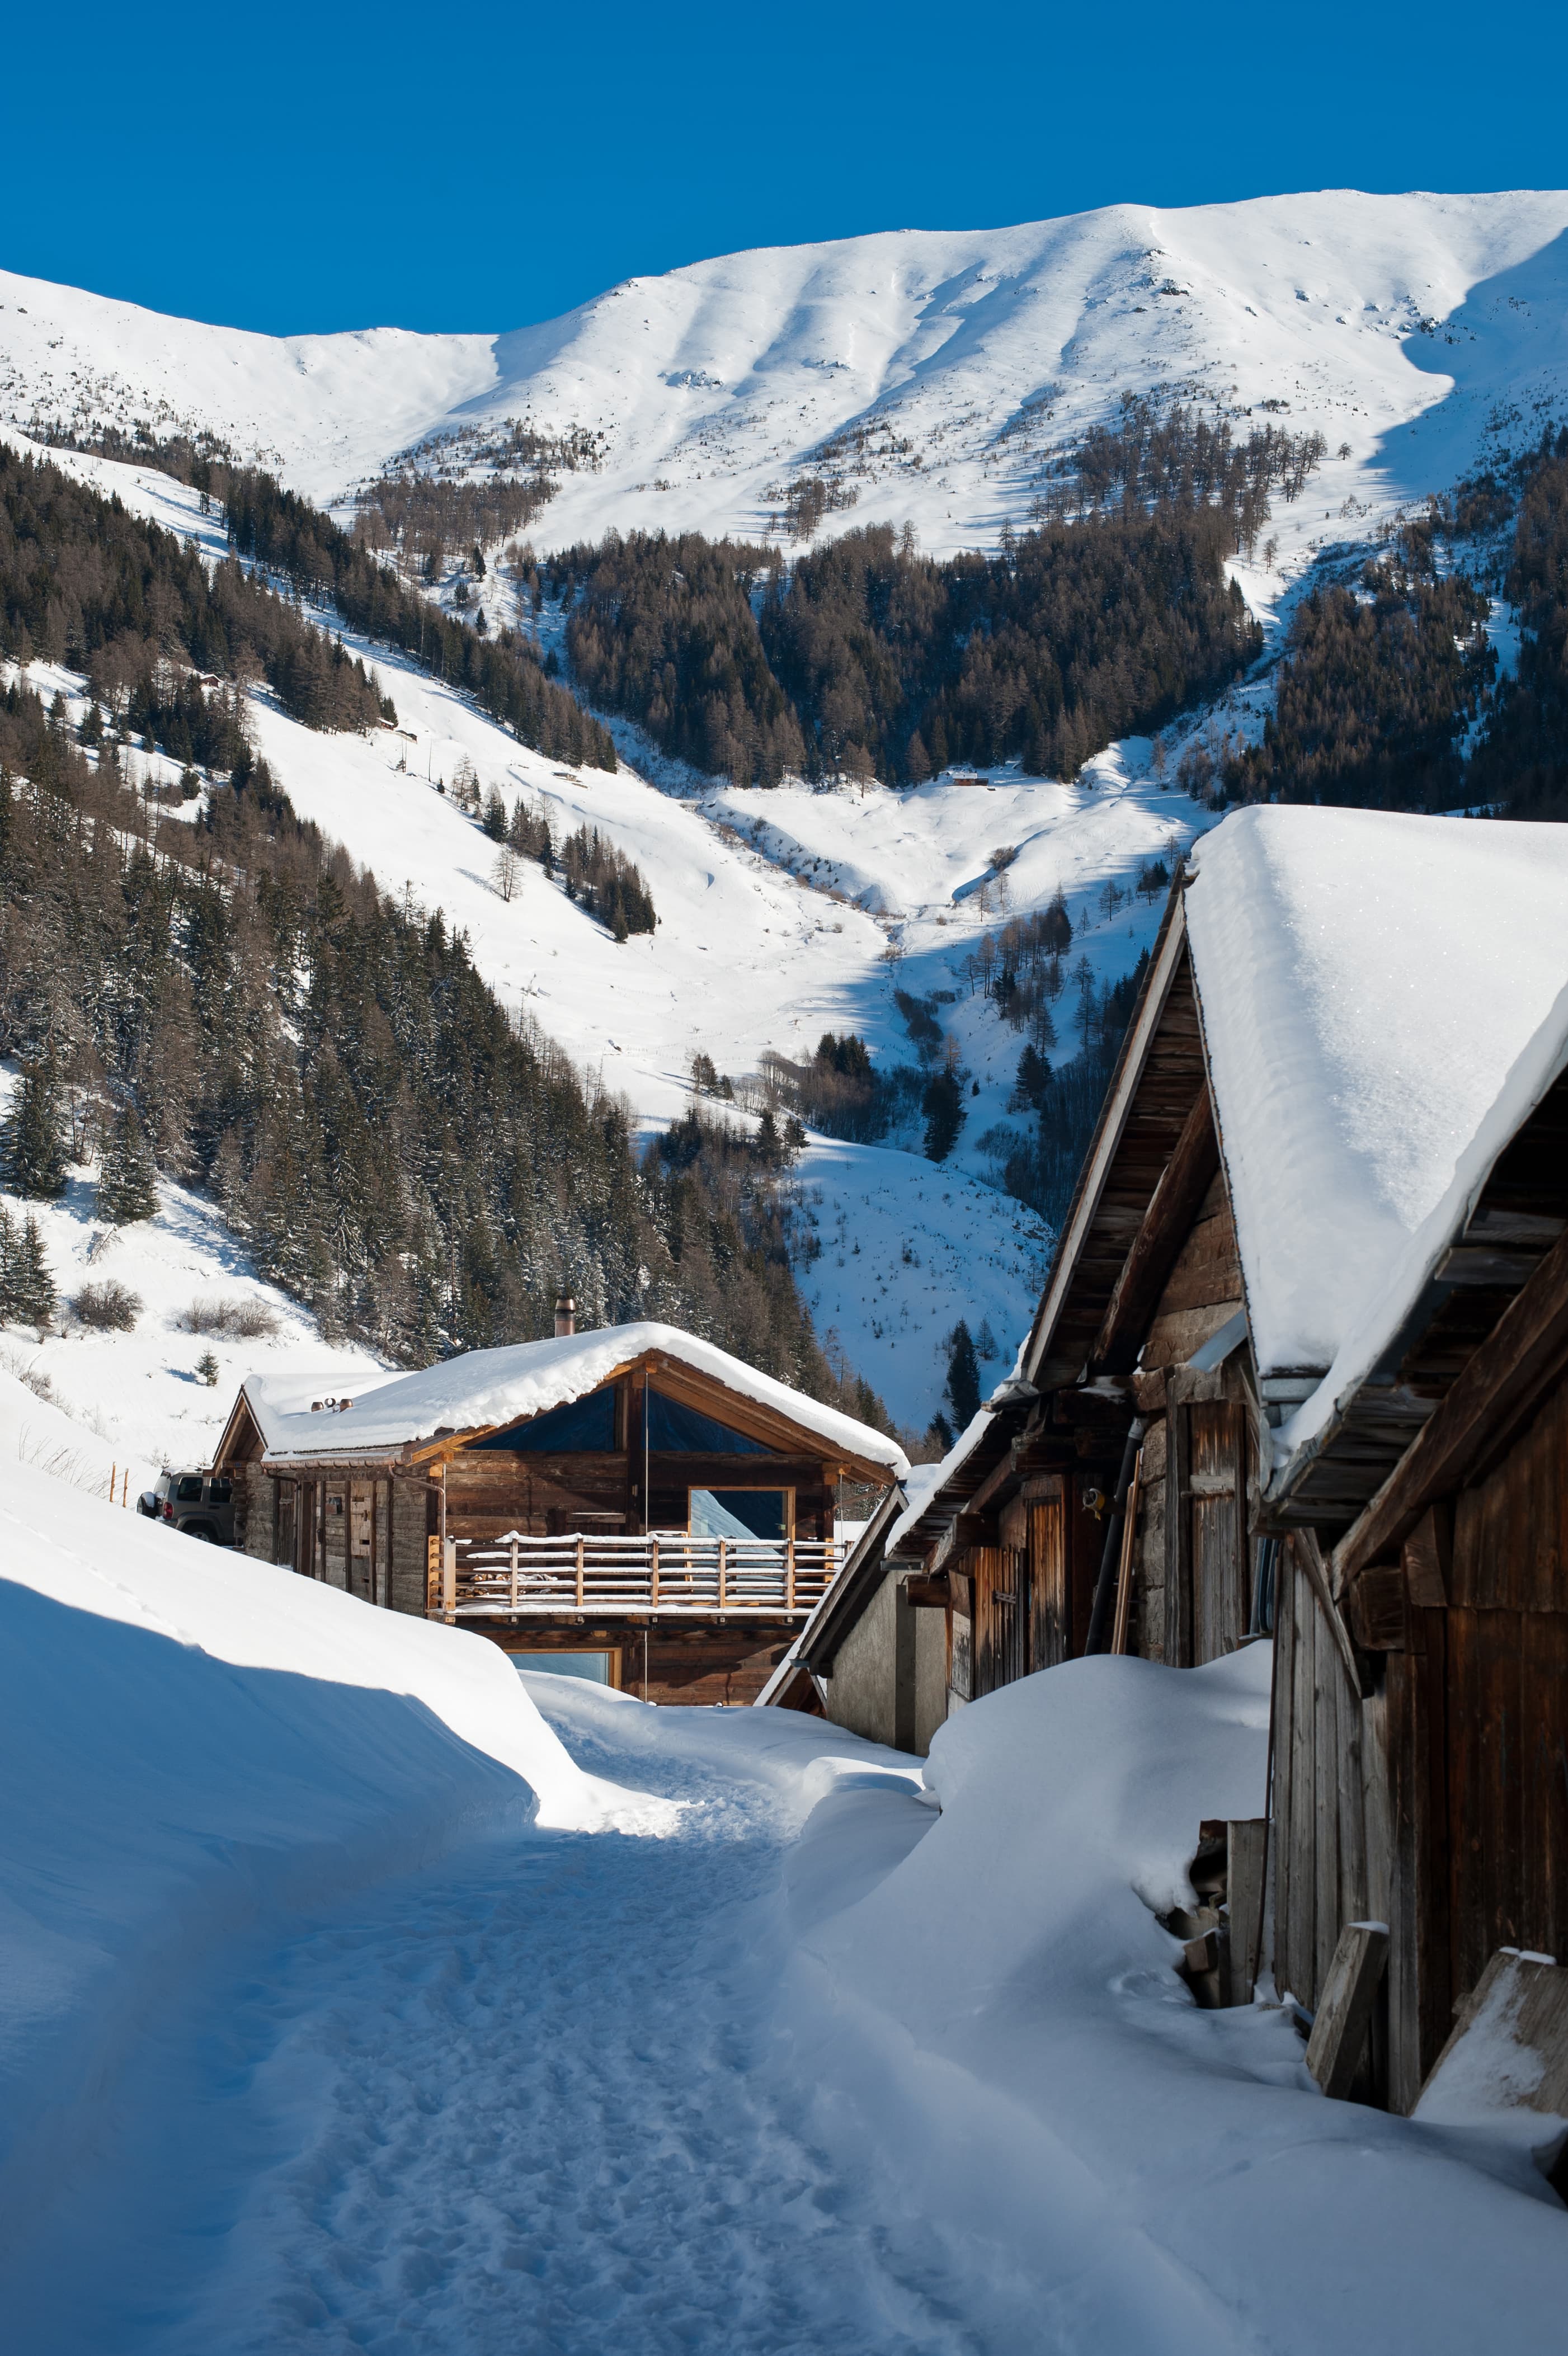 Team building neige - Châteauform' - chalet de montagne